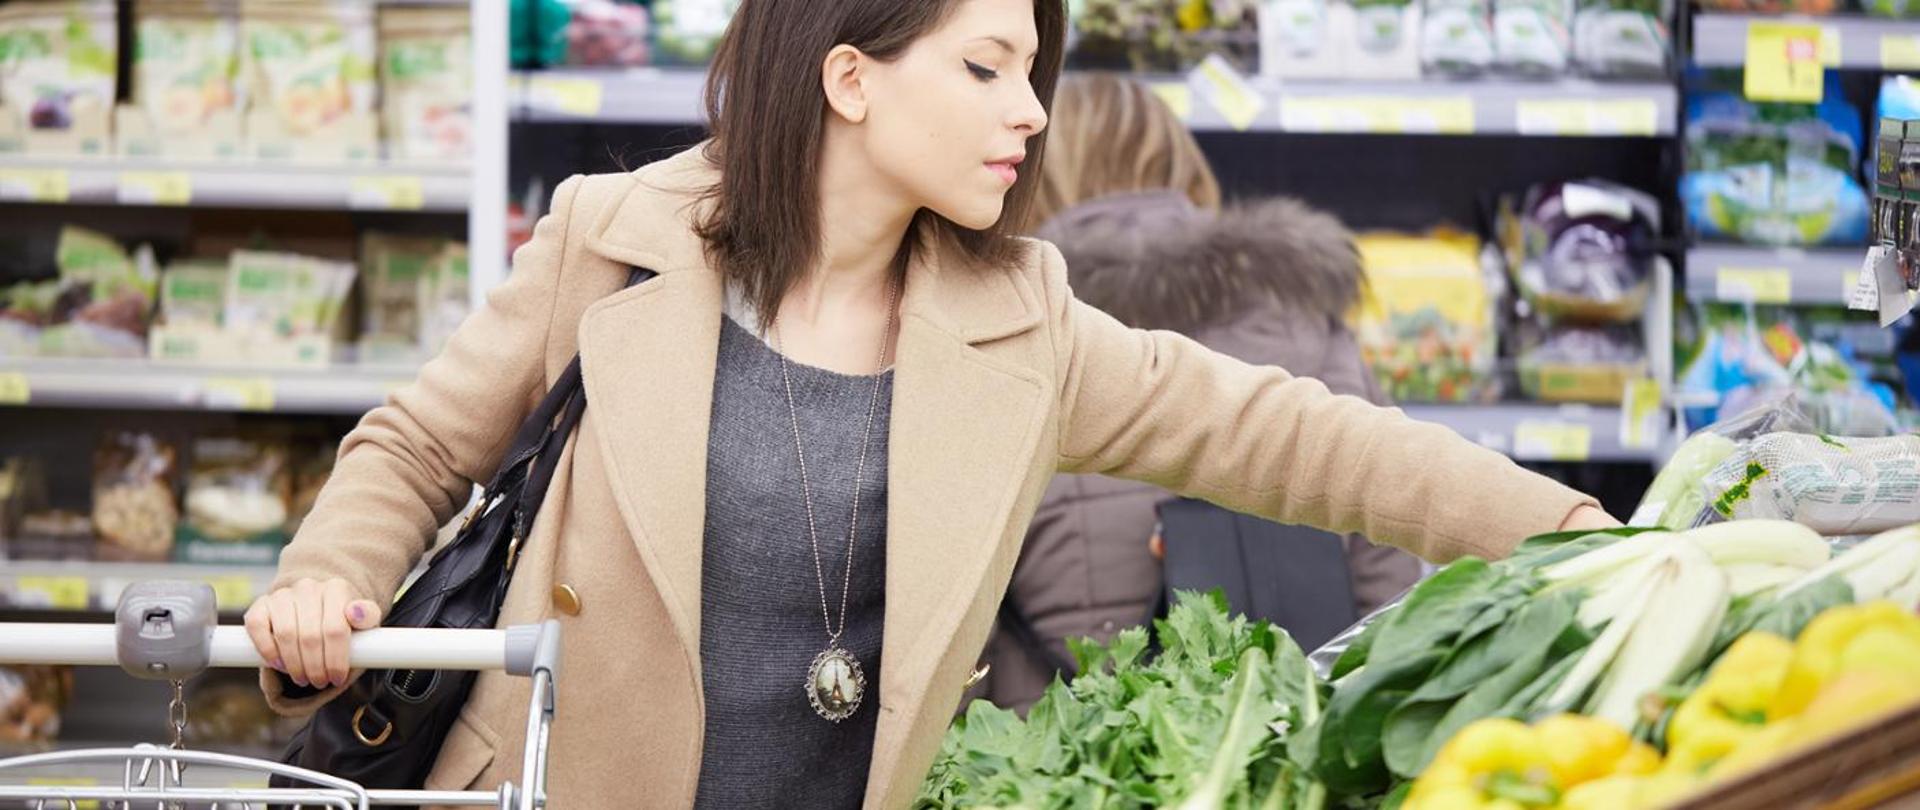 Kobieta w ciemnych włosach i brązowym płaszczu wybierająca warzywa w supermarkecie